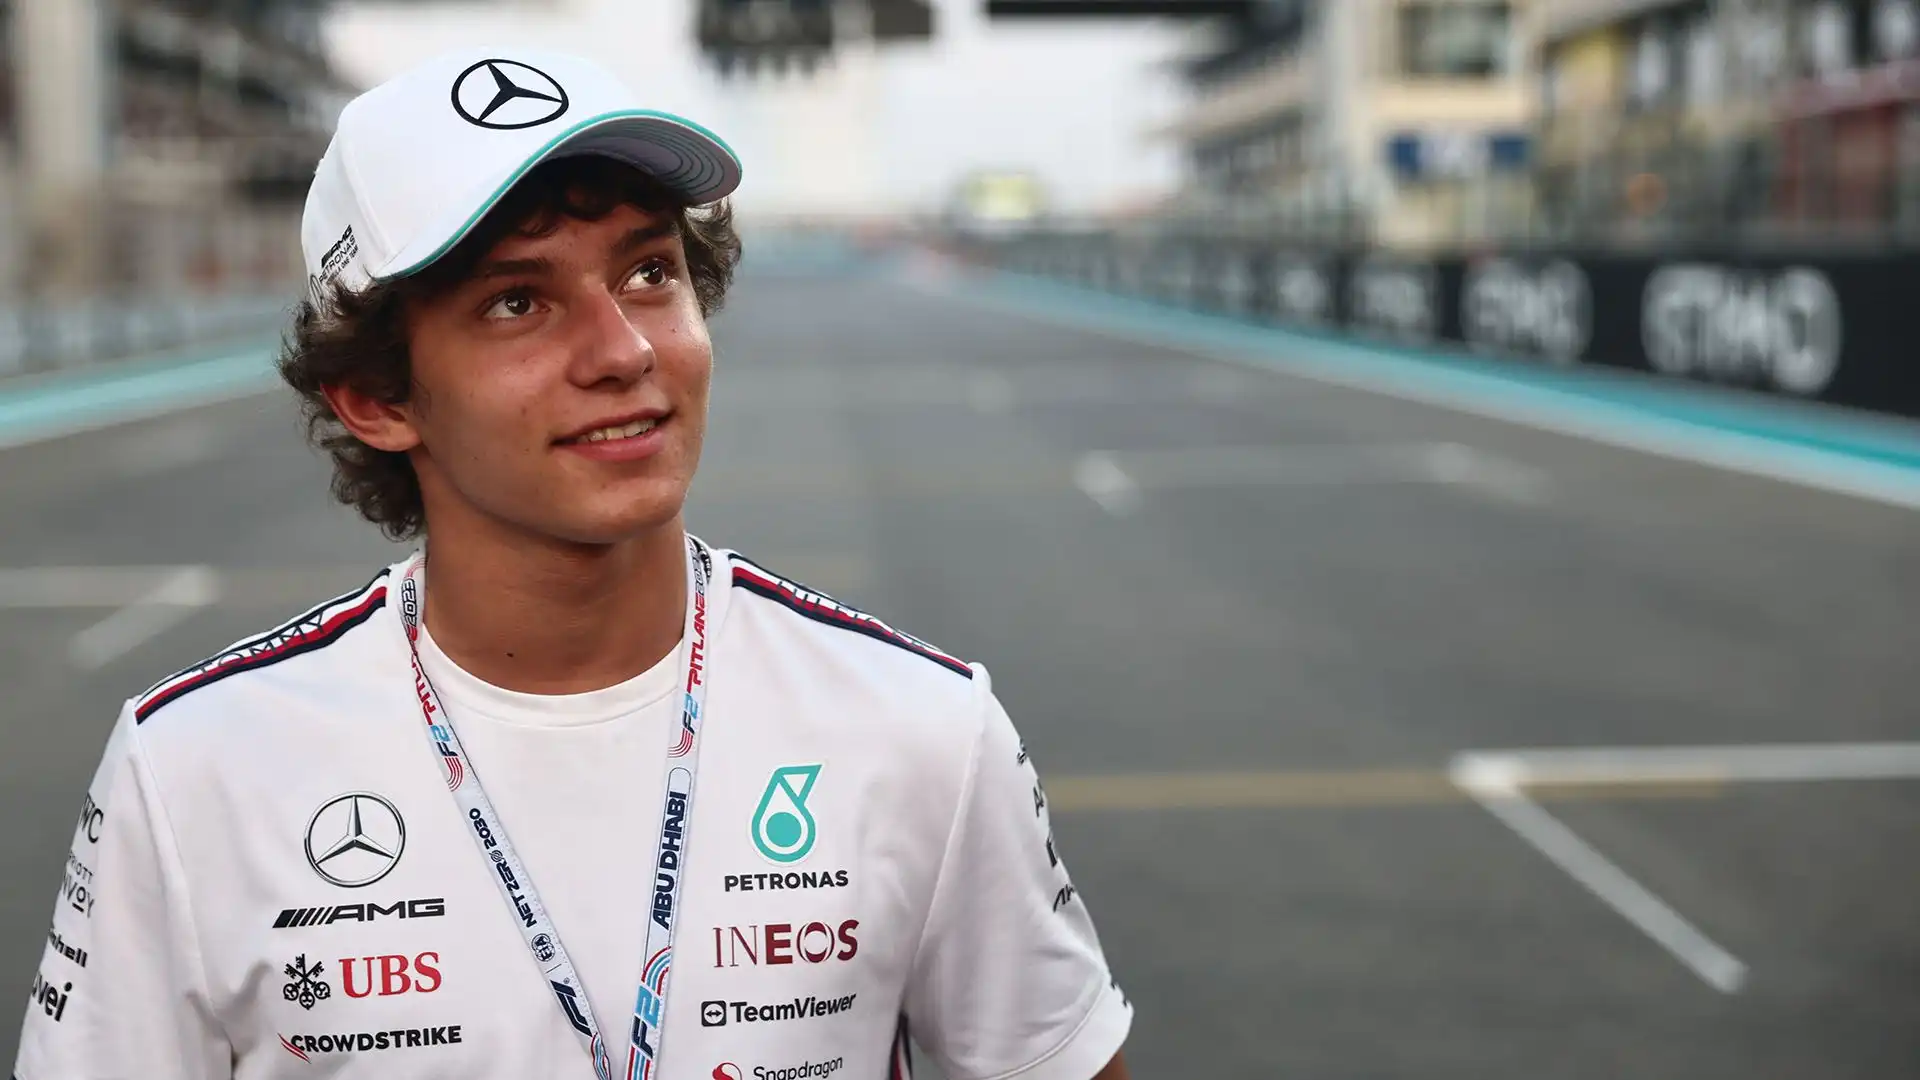 Il giovane pilota italiano, 17 anni, in questa stagione esordirà in Formula 2 con il team Prema